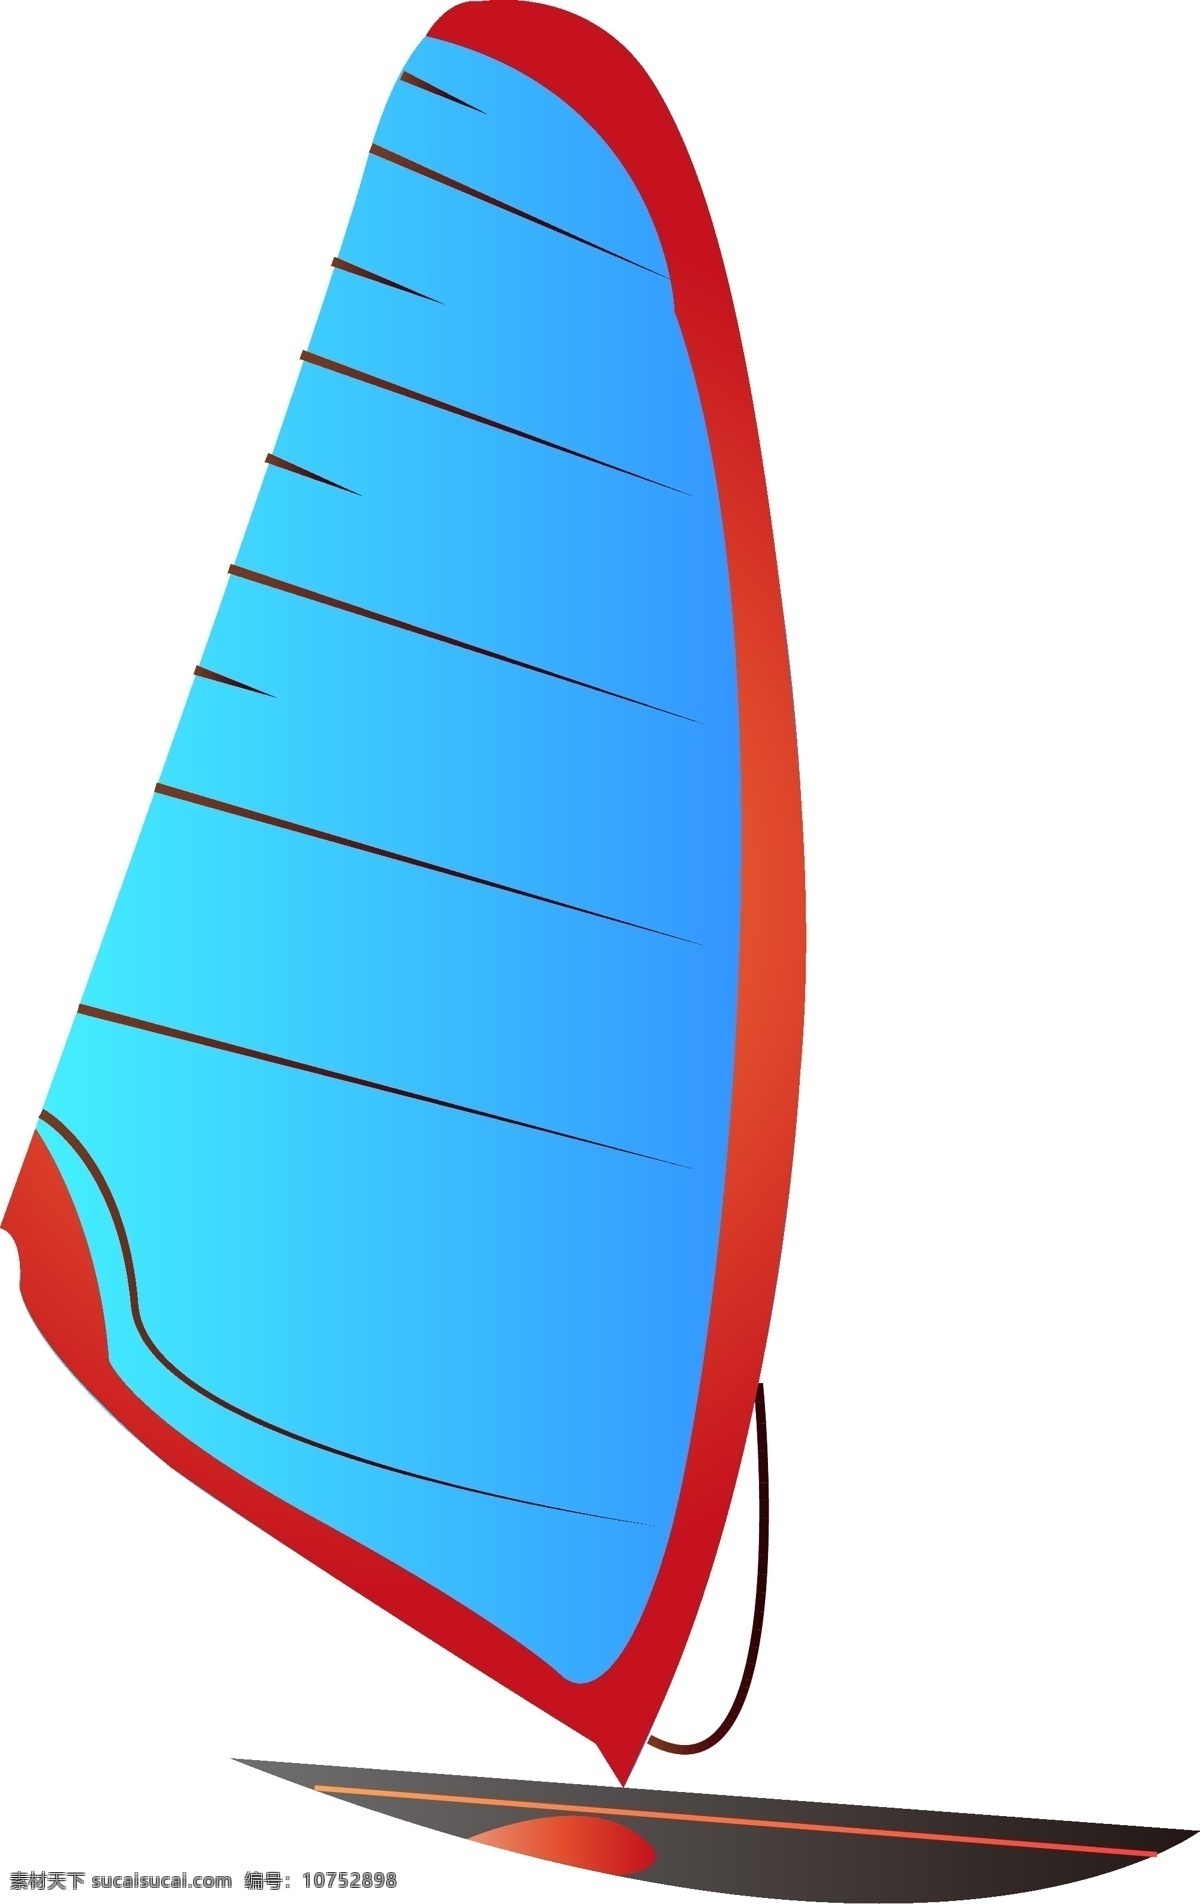 蓝灰色 帆船 手绘 插画 航行的小帆船 蓝灰色帆船 帆船插画 手绘帆船 坐船 打鱼 海边 游艇 航海 轮船